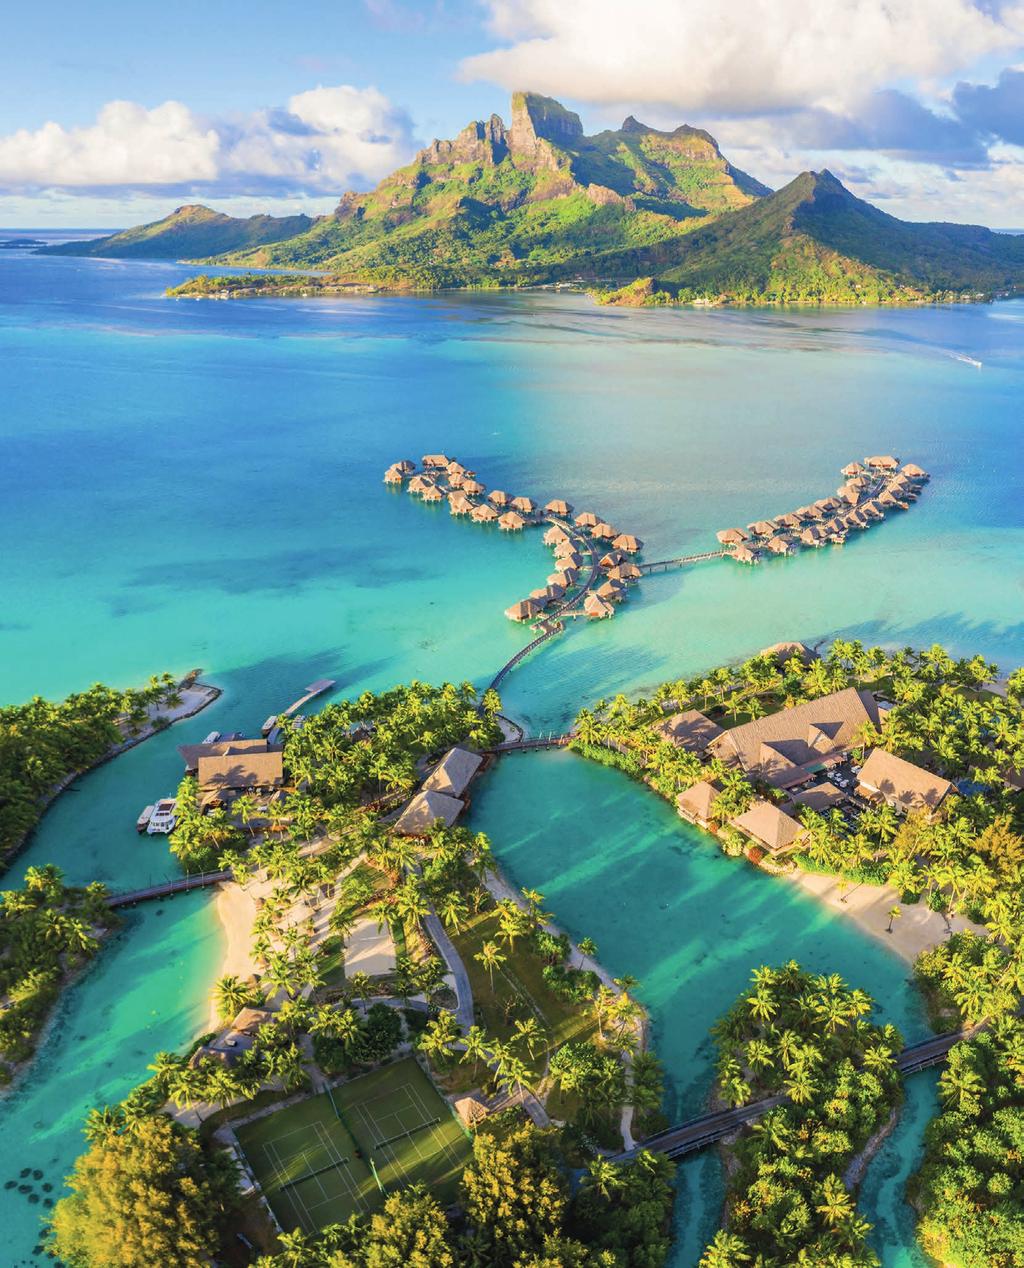 Prie rojaus savo tikslų sąraše galėsite padėti varnelę. David ir Bianca Lisonbee 2020 m. lapkričio 3 8 d. kviečia jus į Bora Bora kurortą Prancūzijos Polinezijos širdyje.